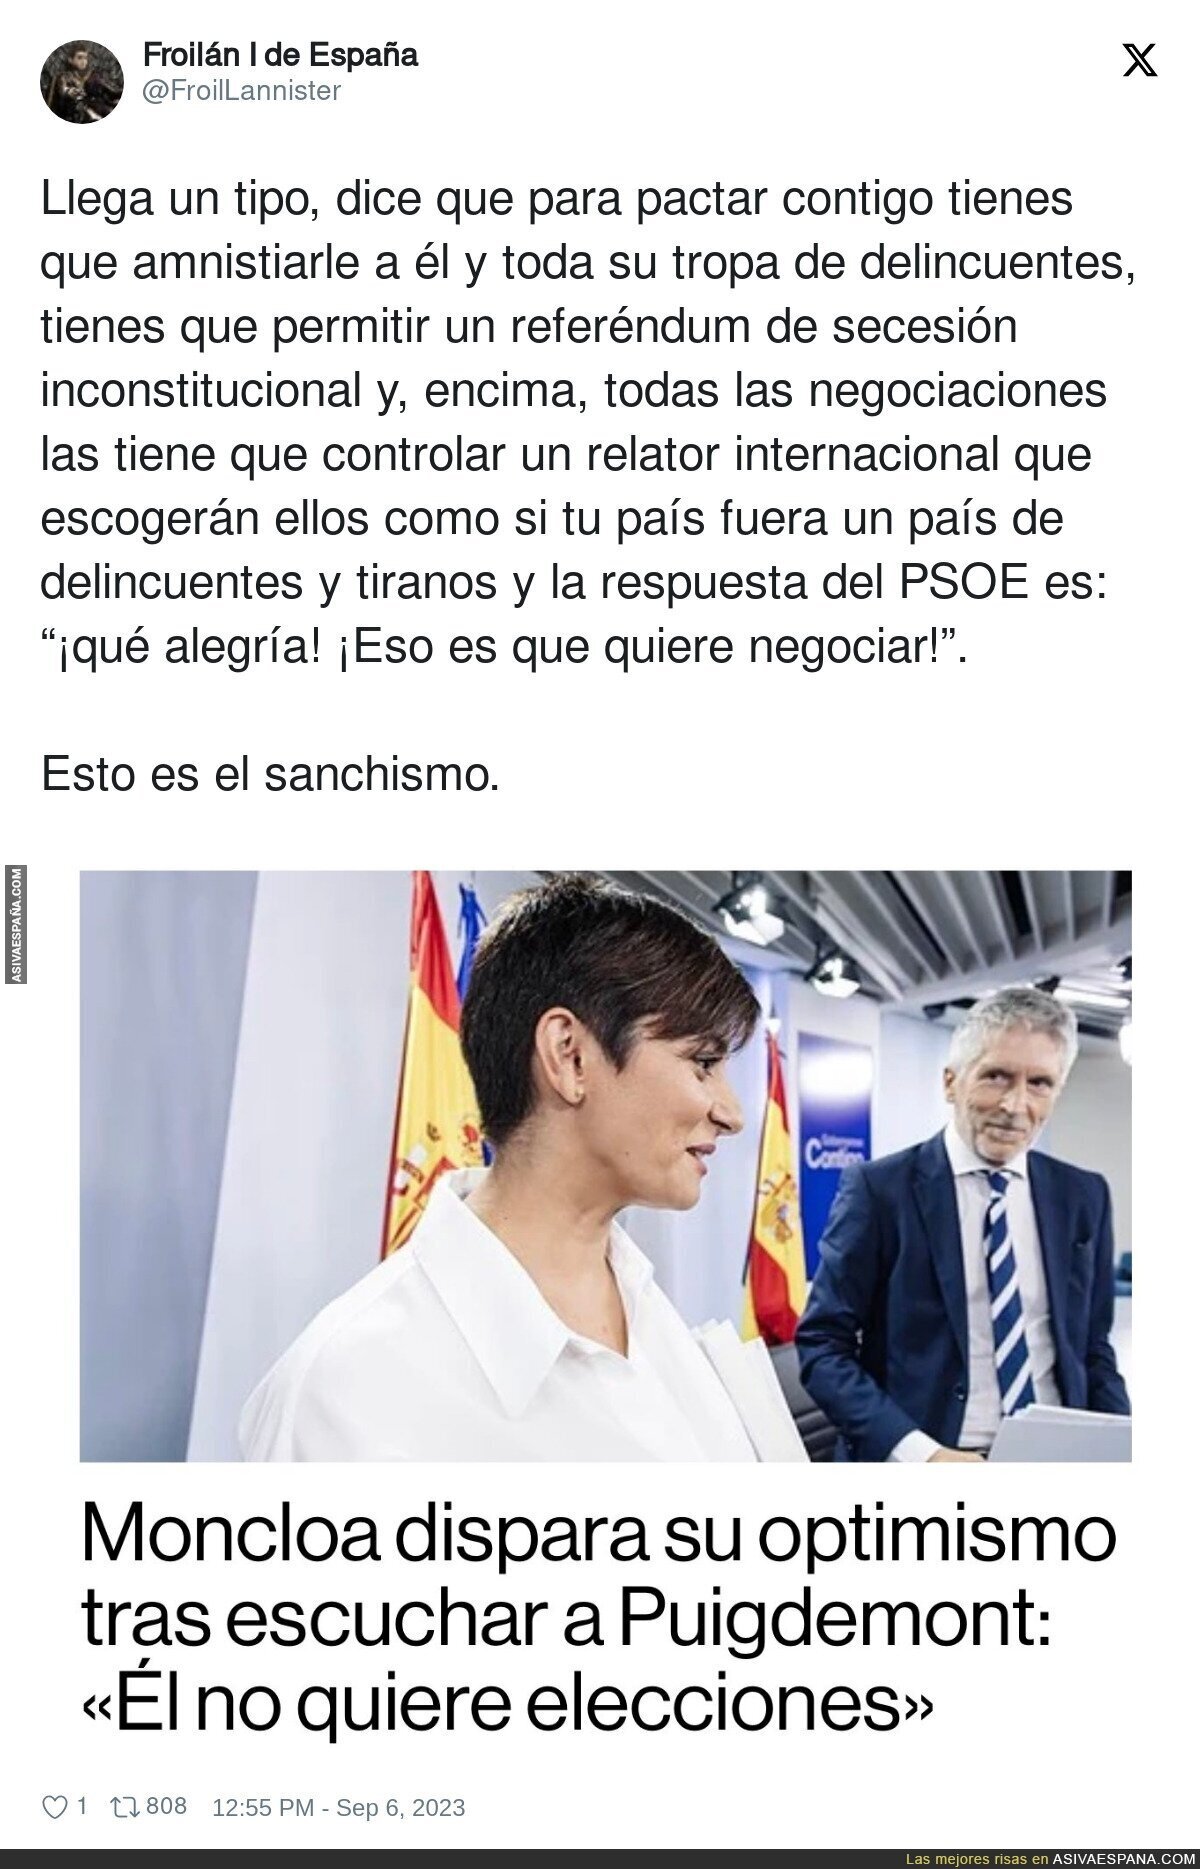 El optimismo del PSOE con Puigdemont